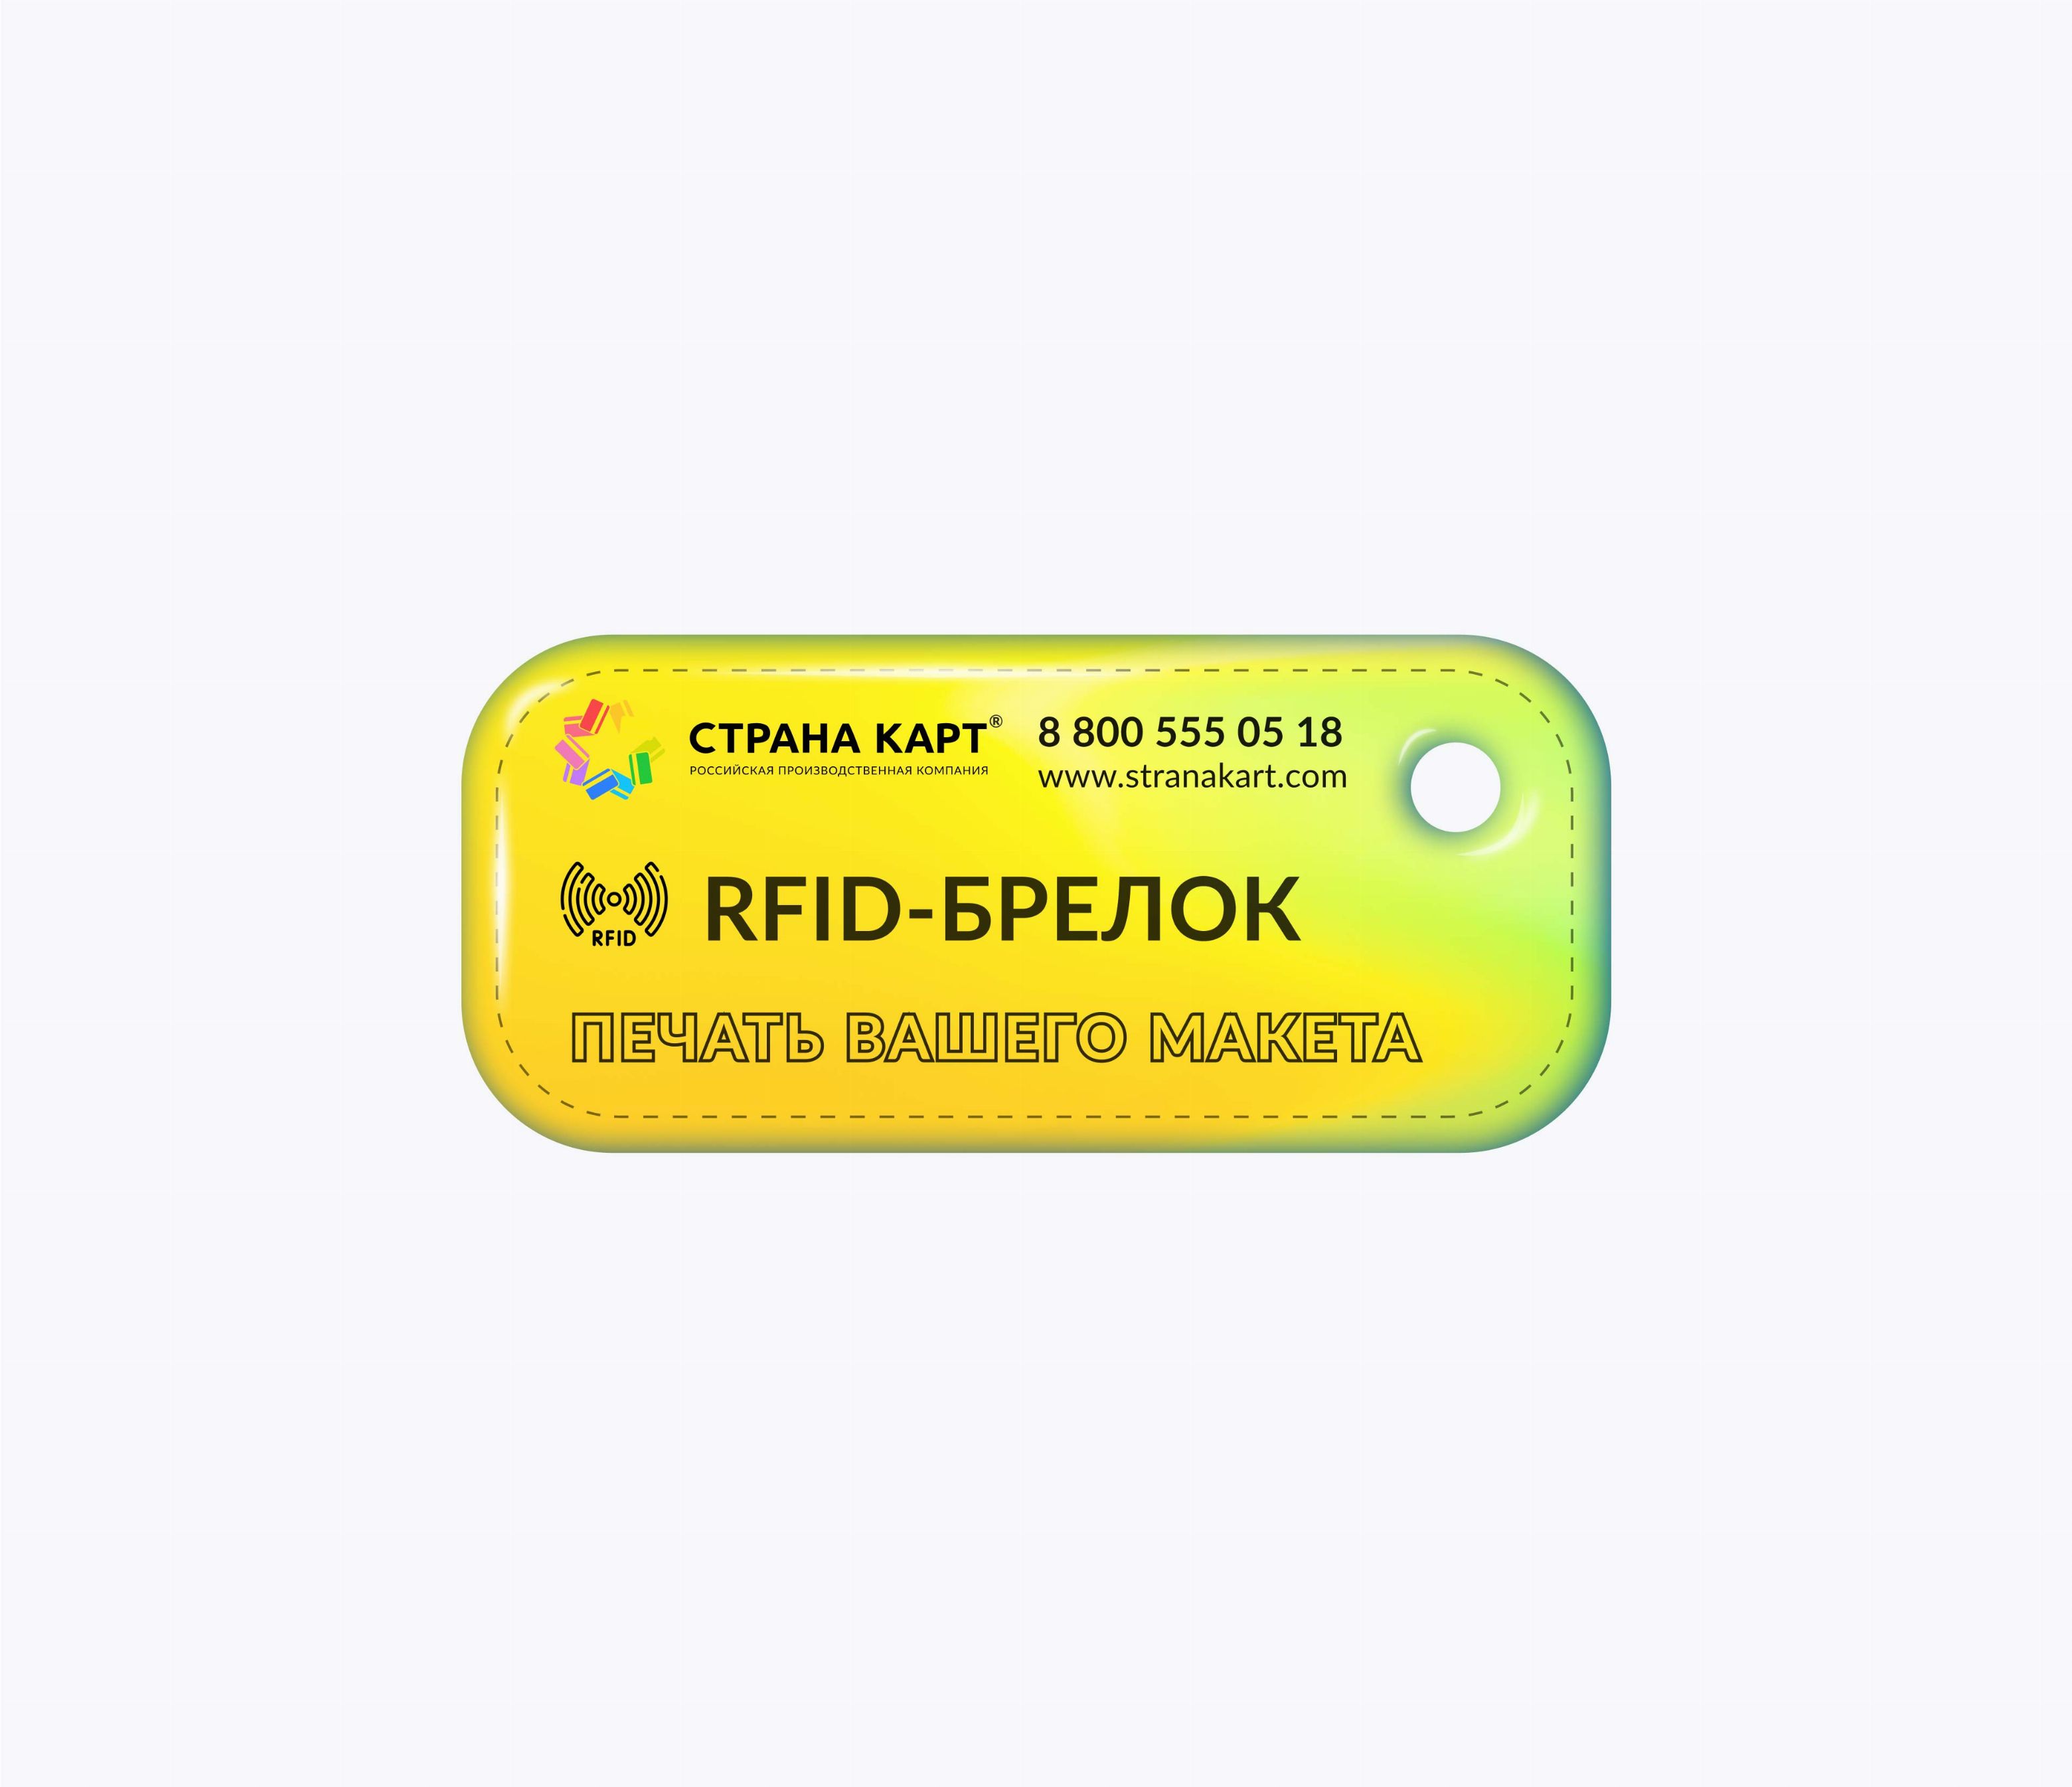 Прямоугольные мини RFID-брелоки NEOKEY® с чипом MIK1KMCM 7 byte UID RFID-брелоки NEOKEY® с чипом MIK1KMCM 7 byte UID и вашим логотипом